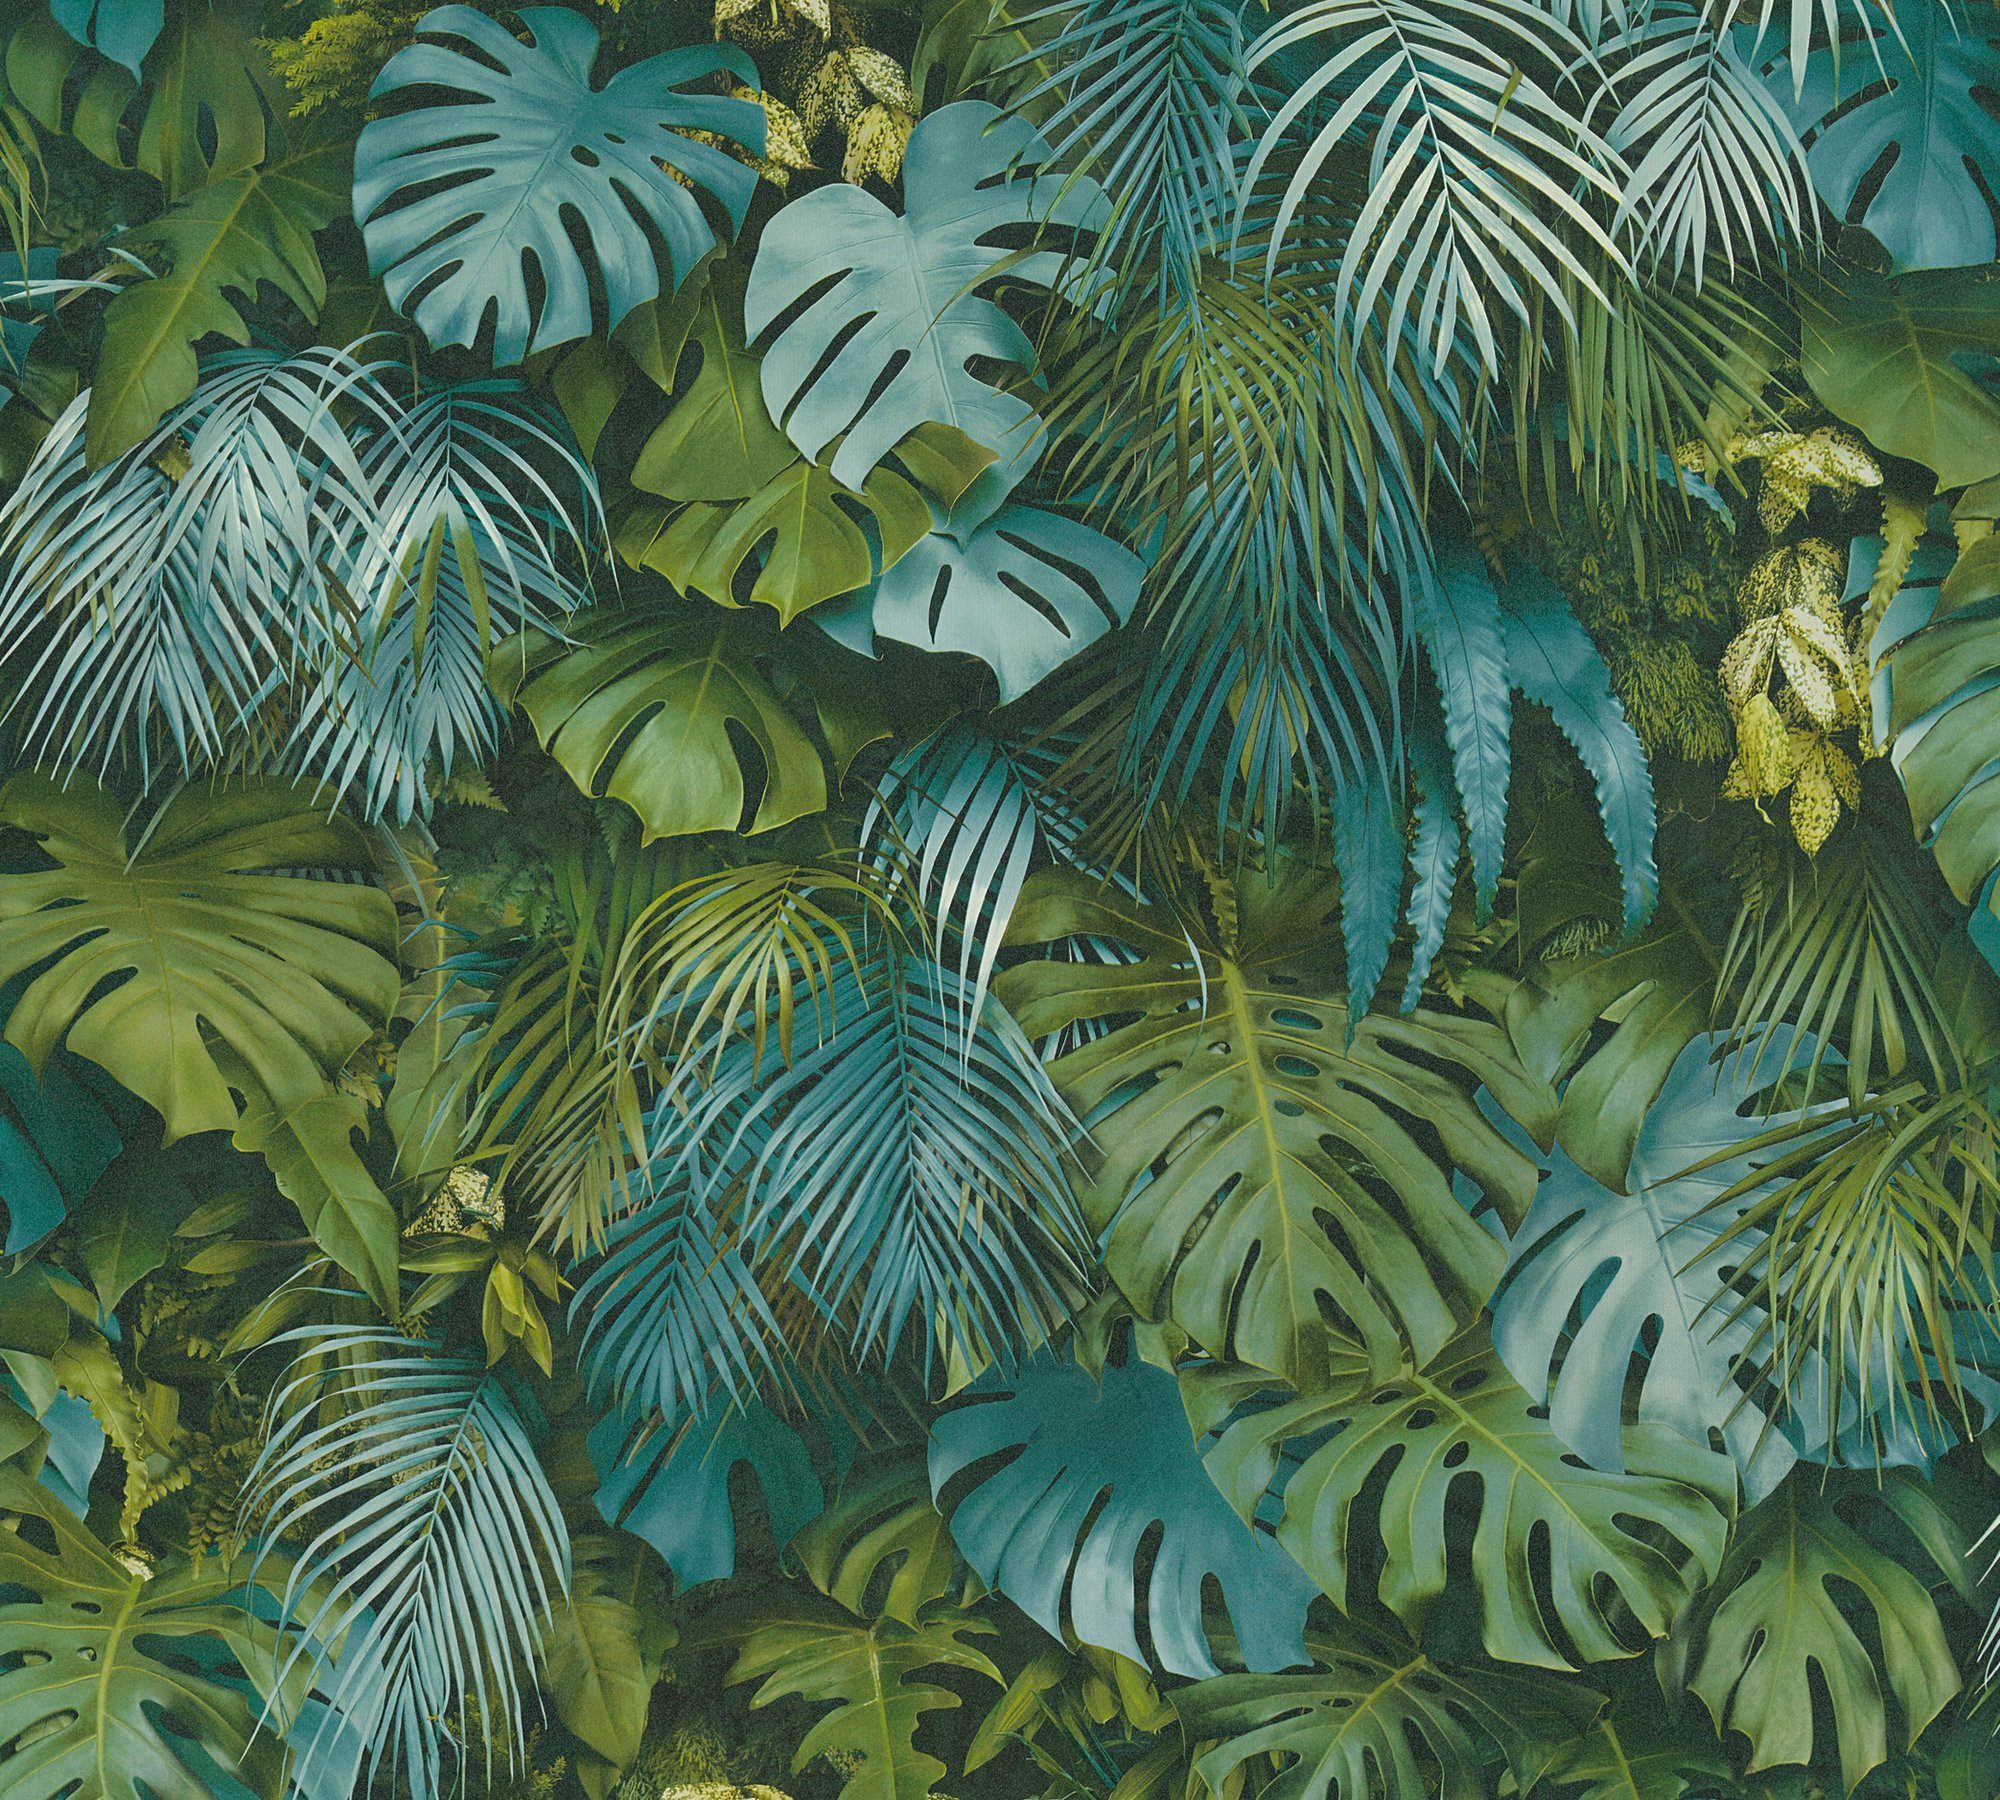 Palmentapete floral, Tapete in Palmenprint Optik, Greenery Dschungel Vliestapete bunt/blau A.S. mit Dschungel Création